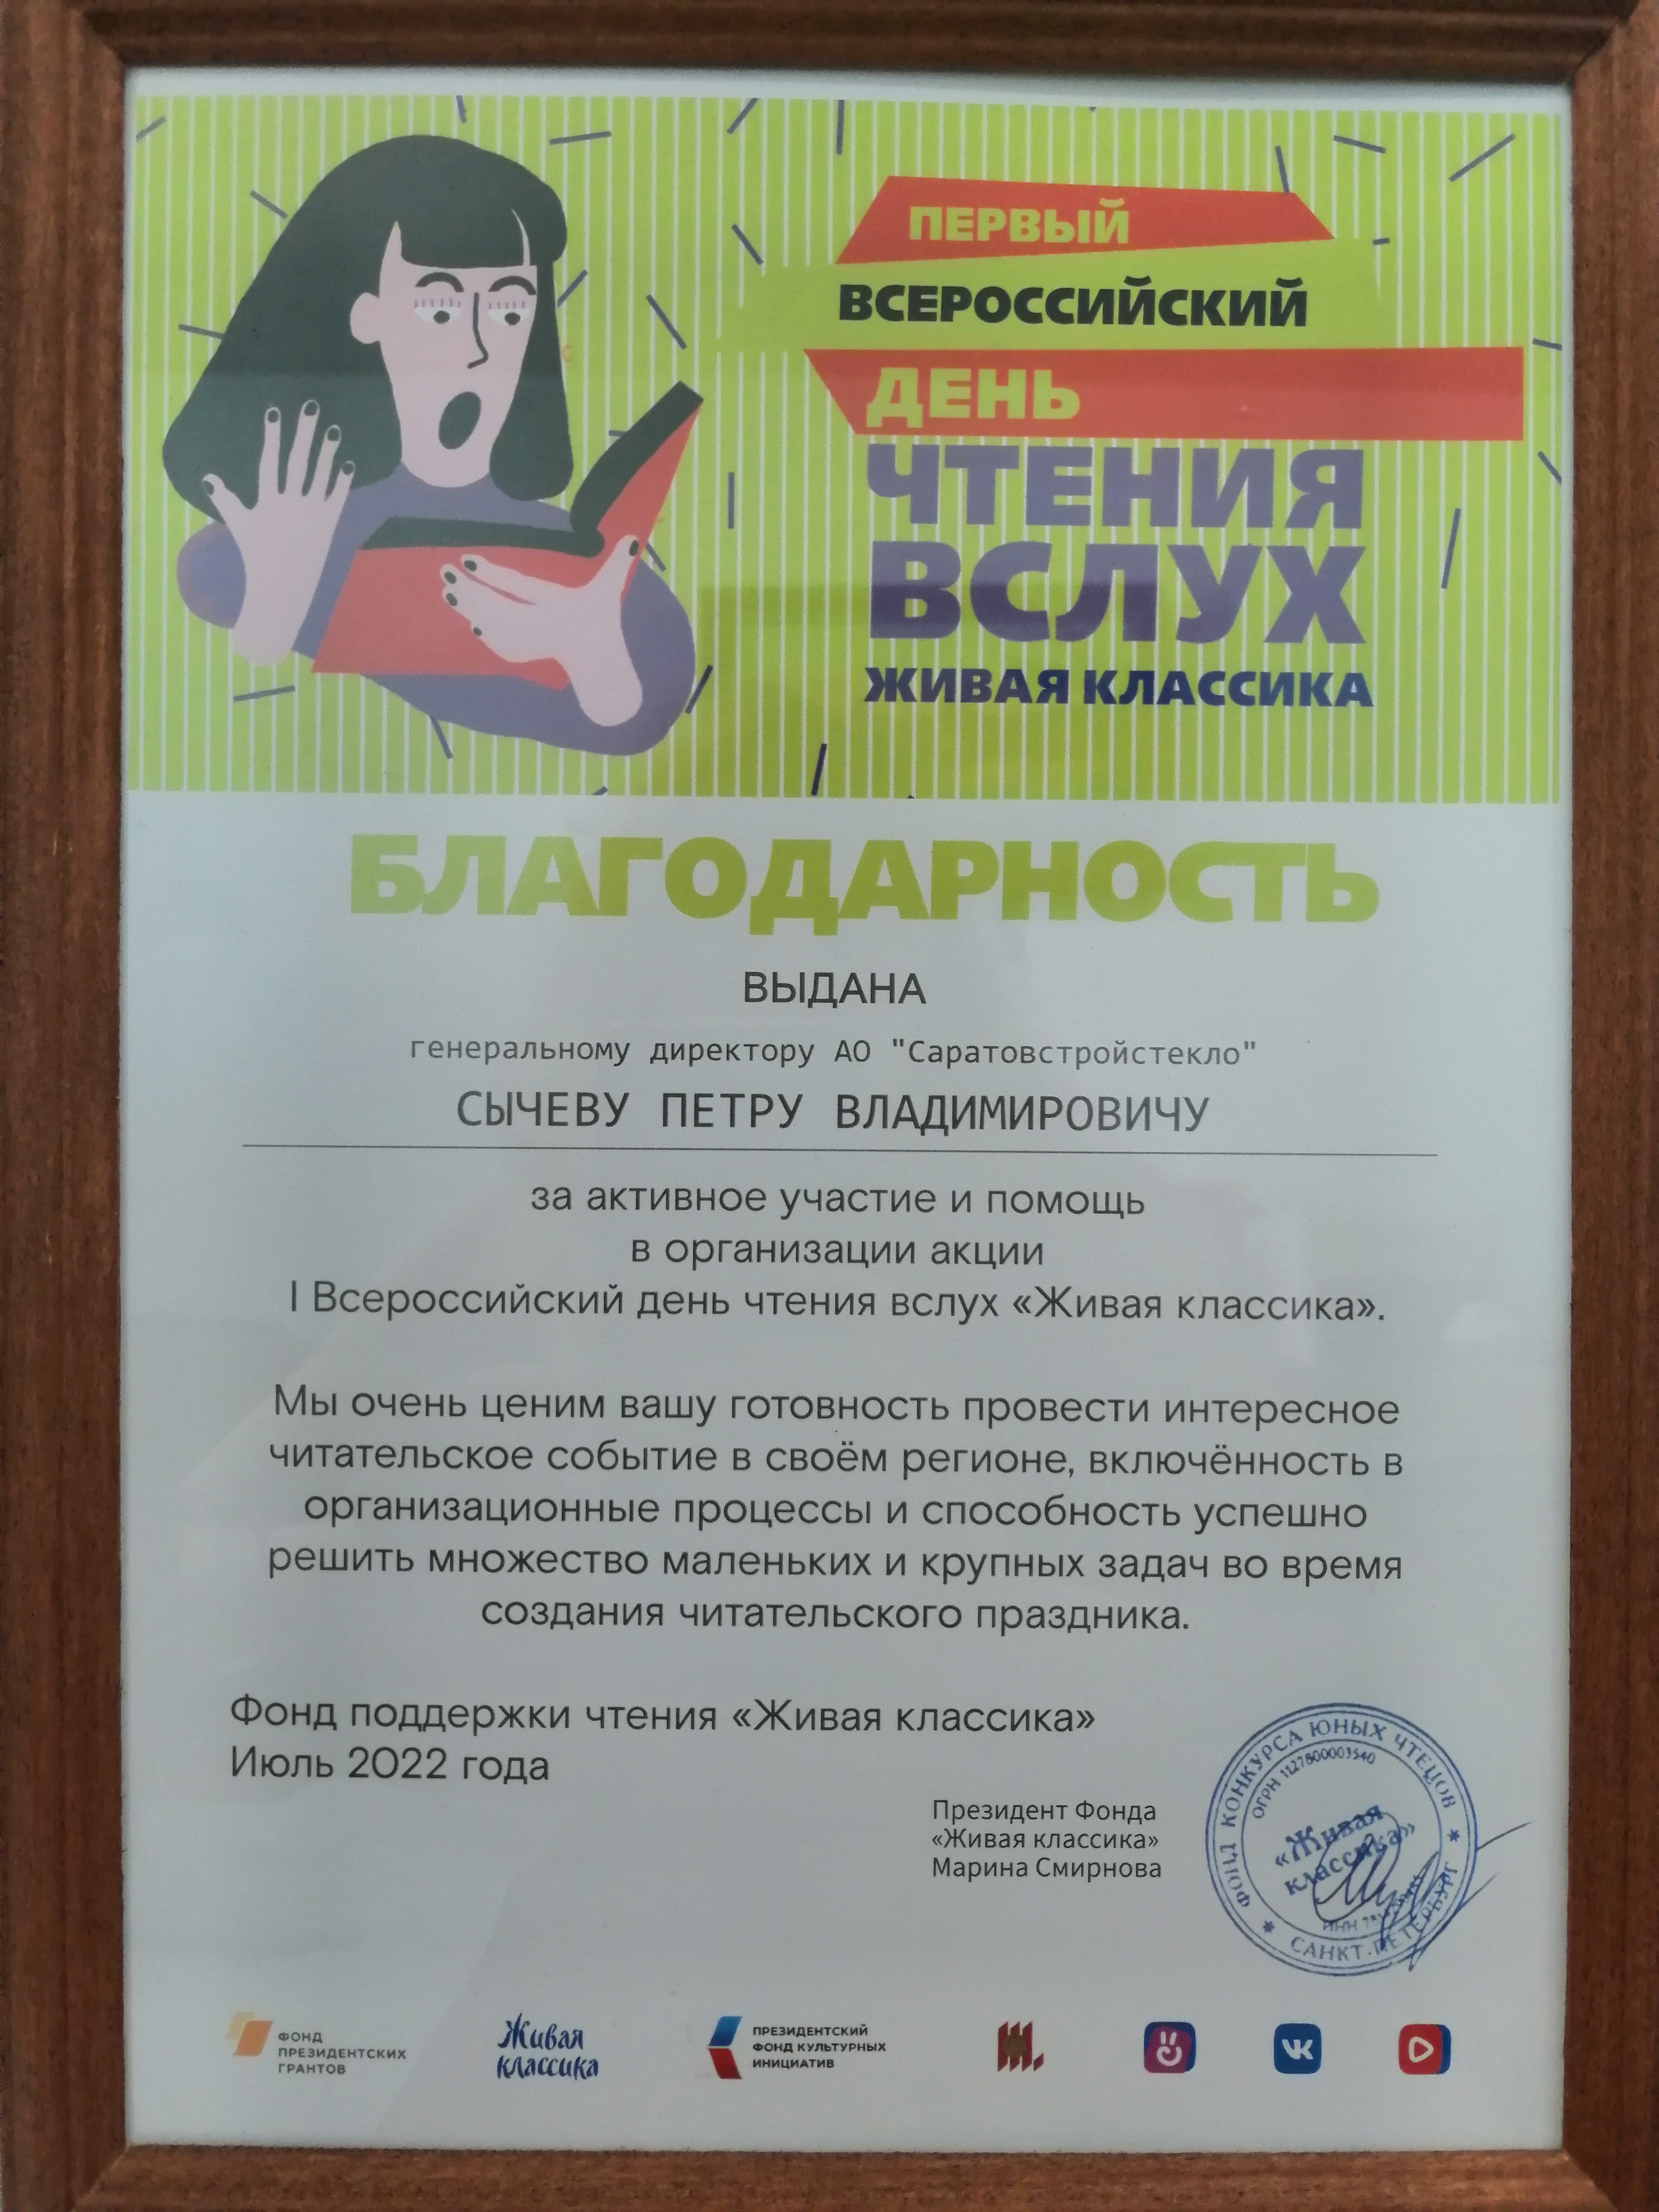 Всероссийский день чтения вслух "Живая классика"